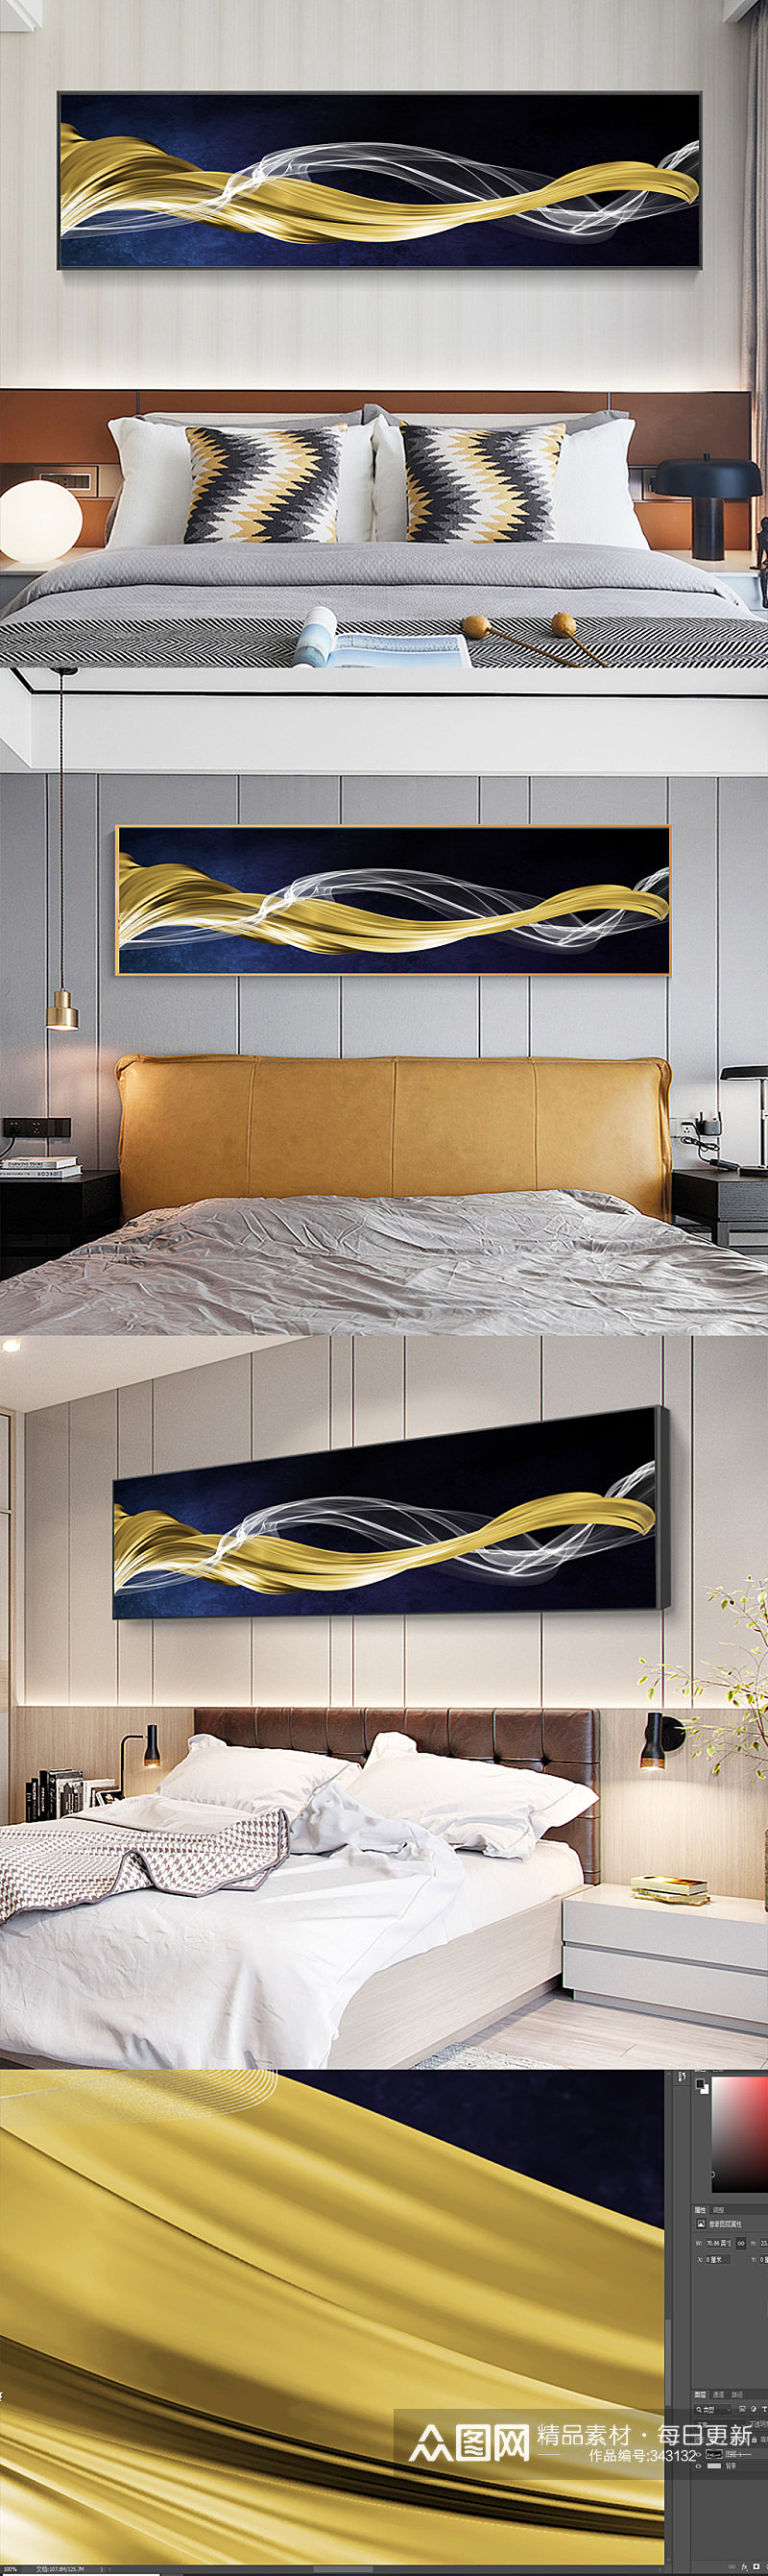 现代简约线头卧室床头画素材